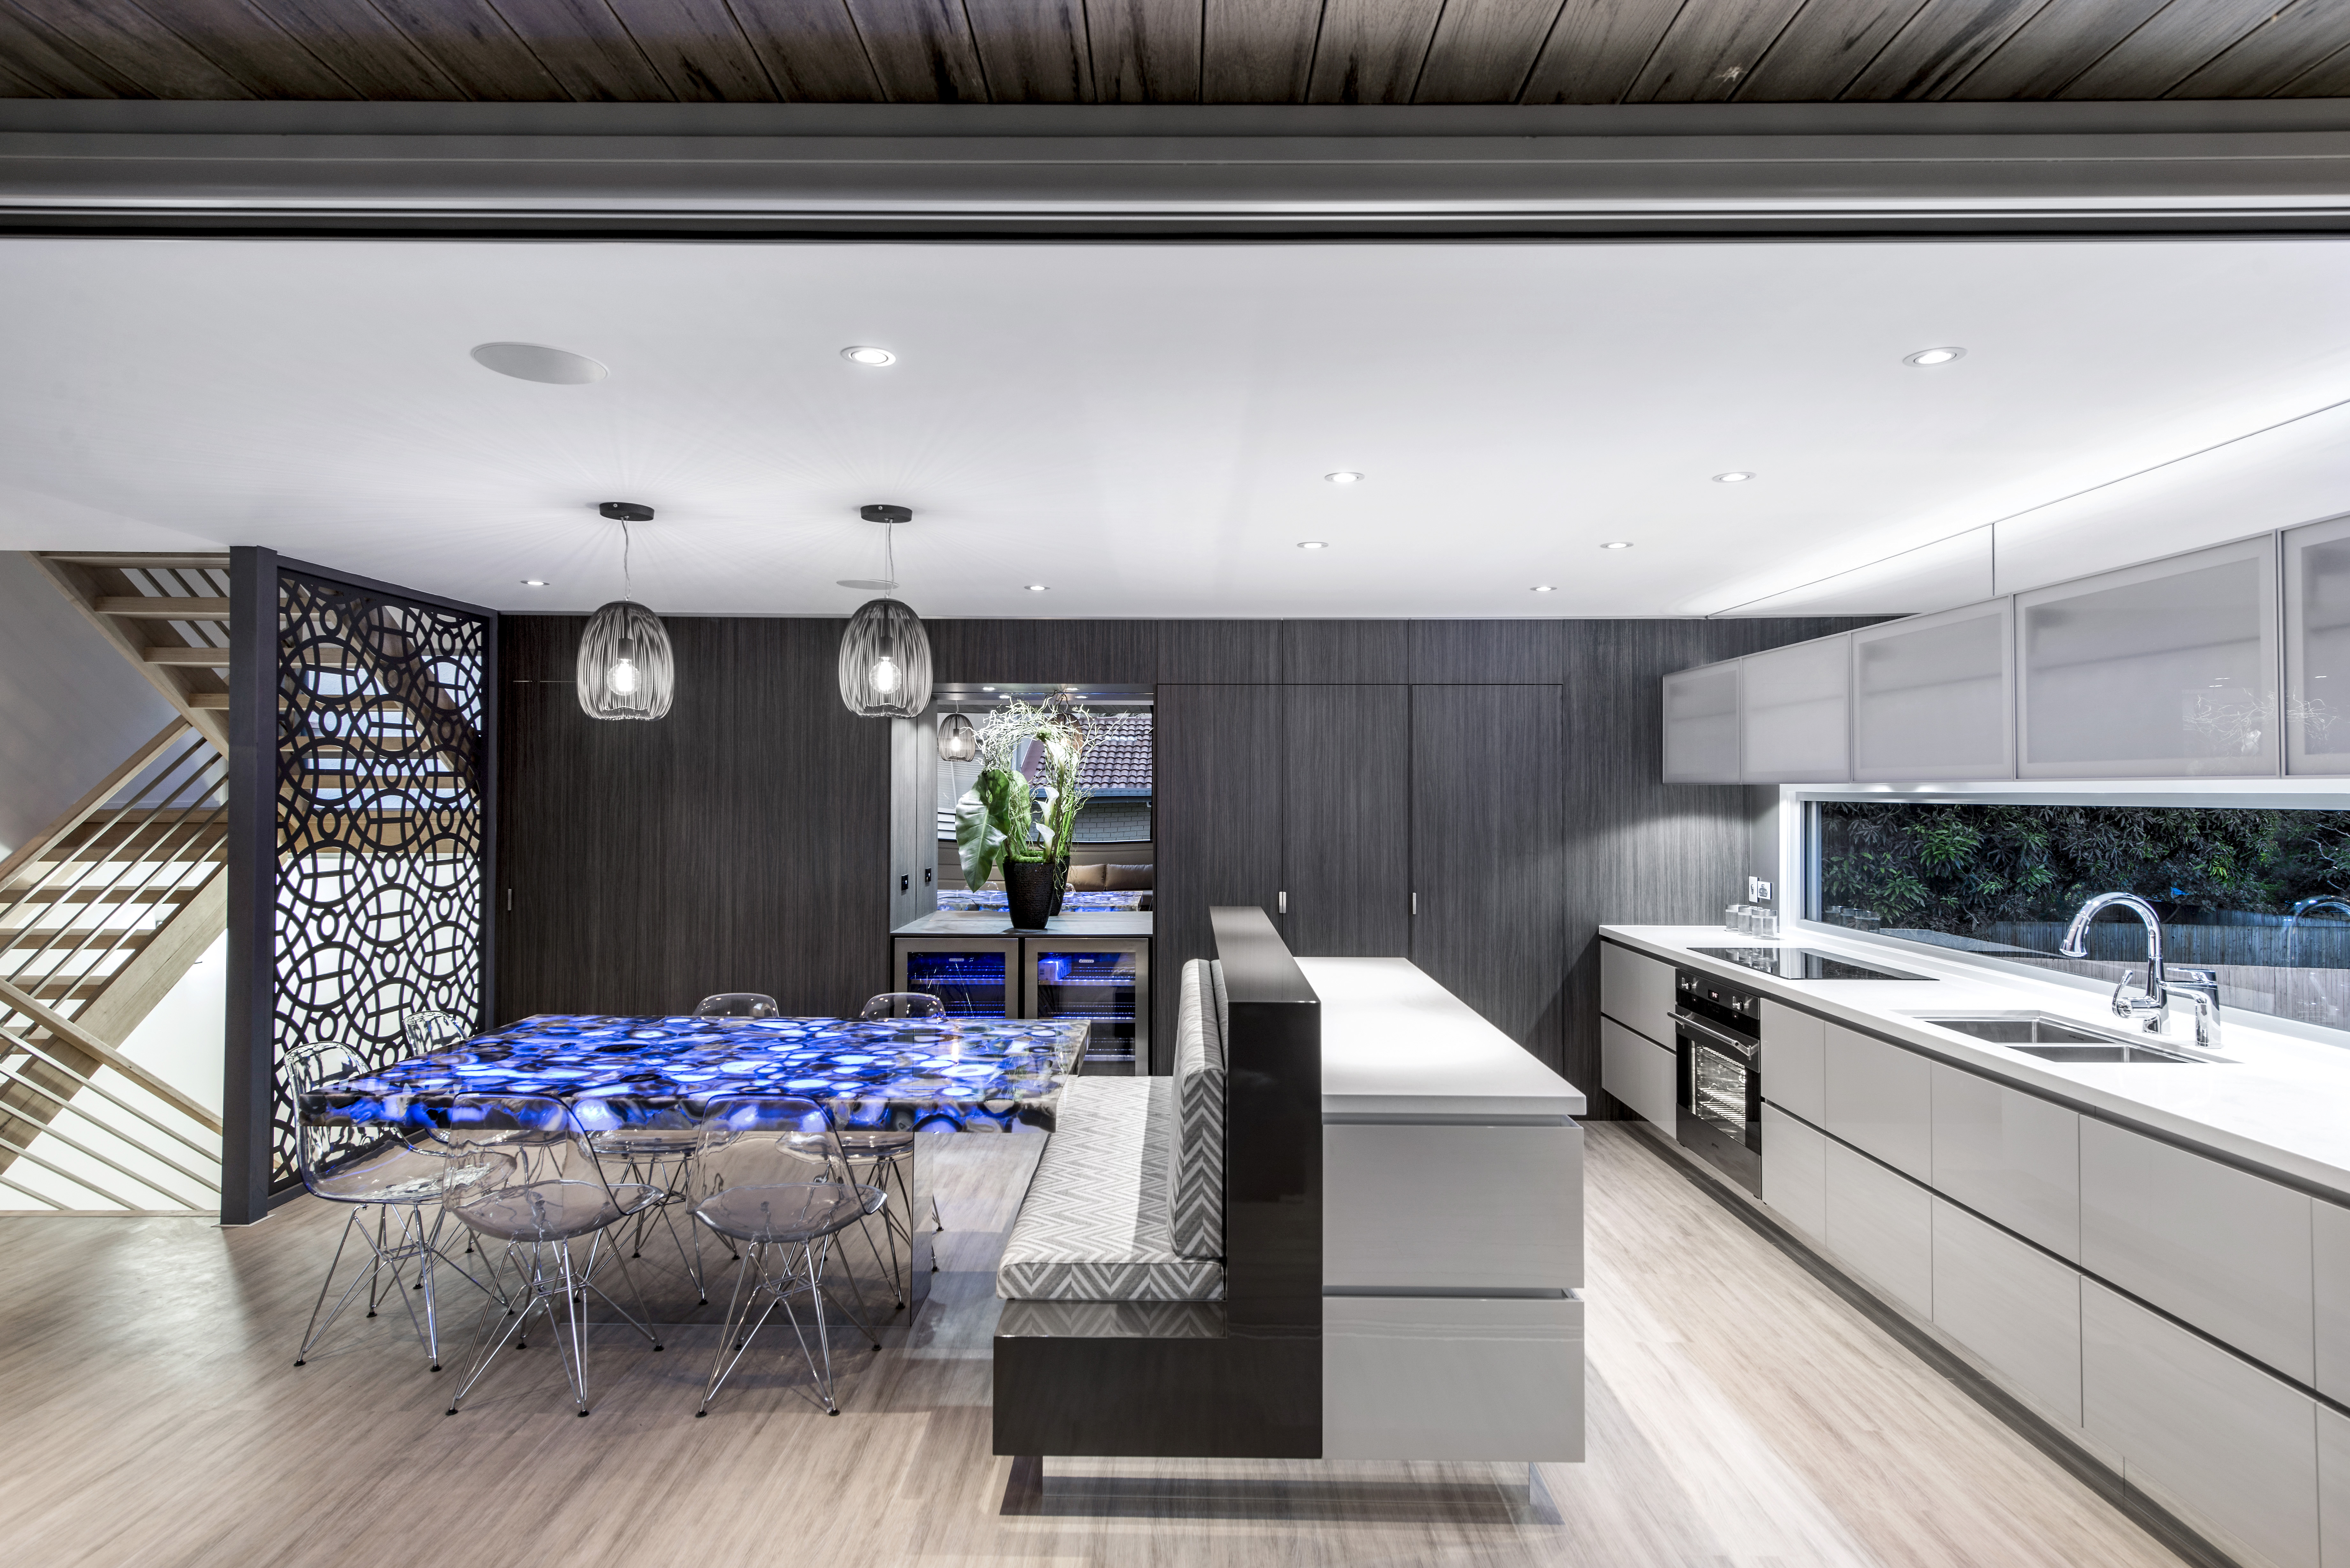 Luxary Kitchen Design Brisbane